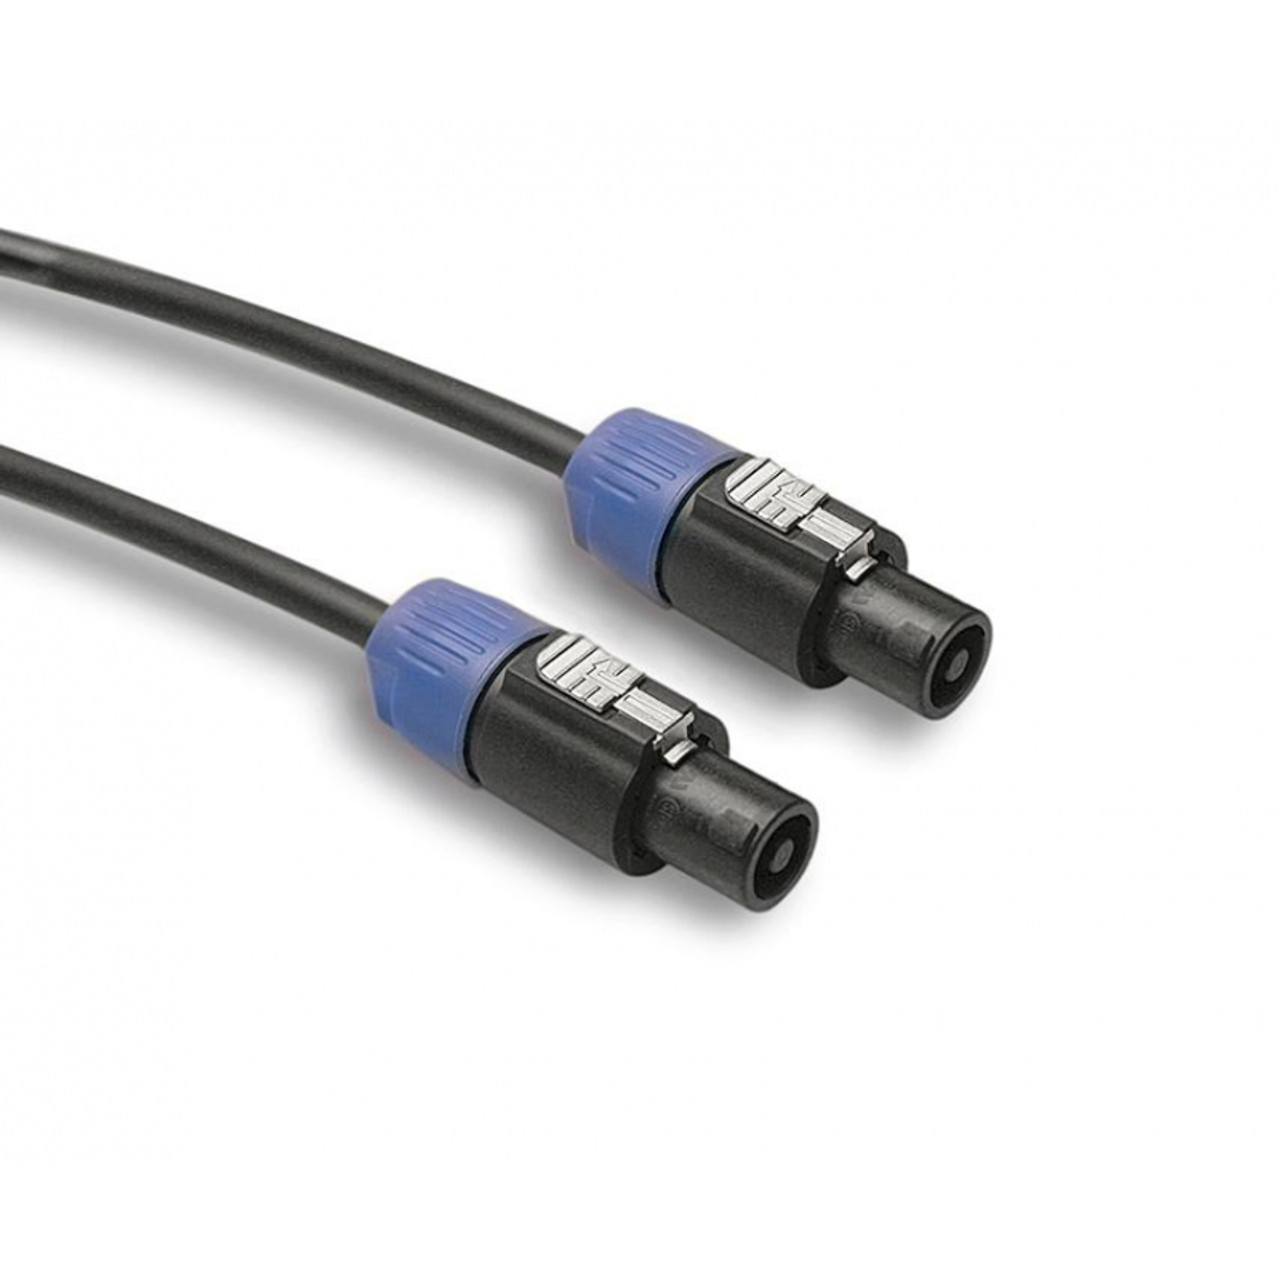 Haalbaar gordijn Verandering Speaker Cable Kit - 100 or 200 Ft with Neutrik® Speakon® Connectors